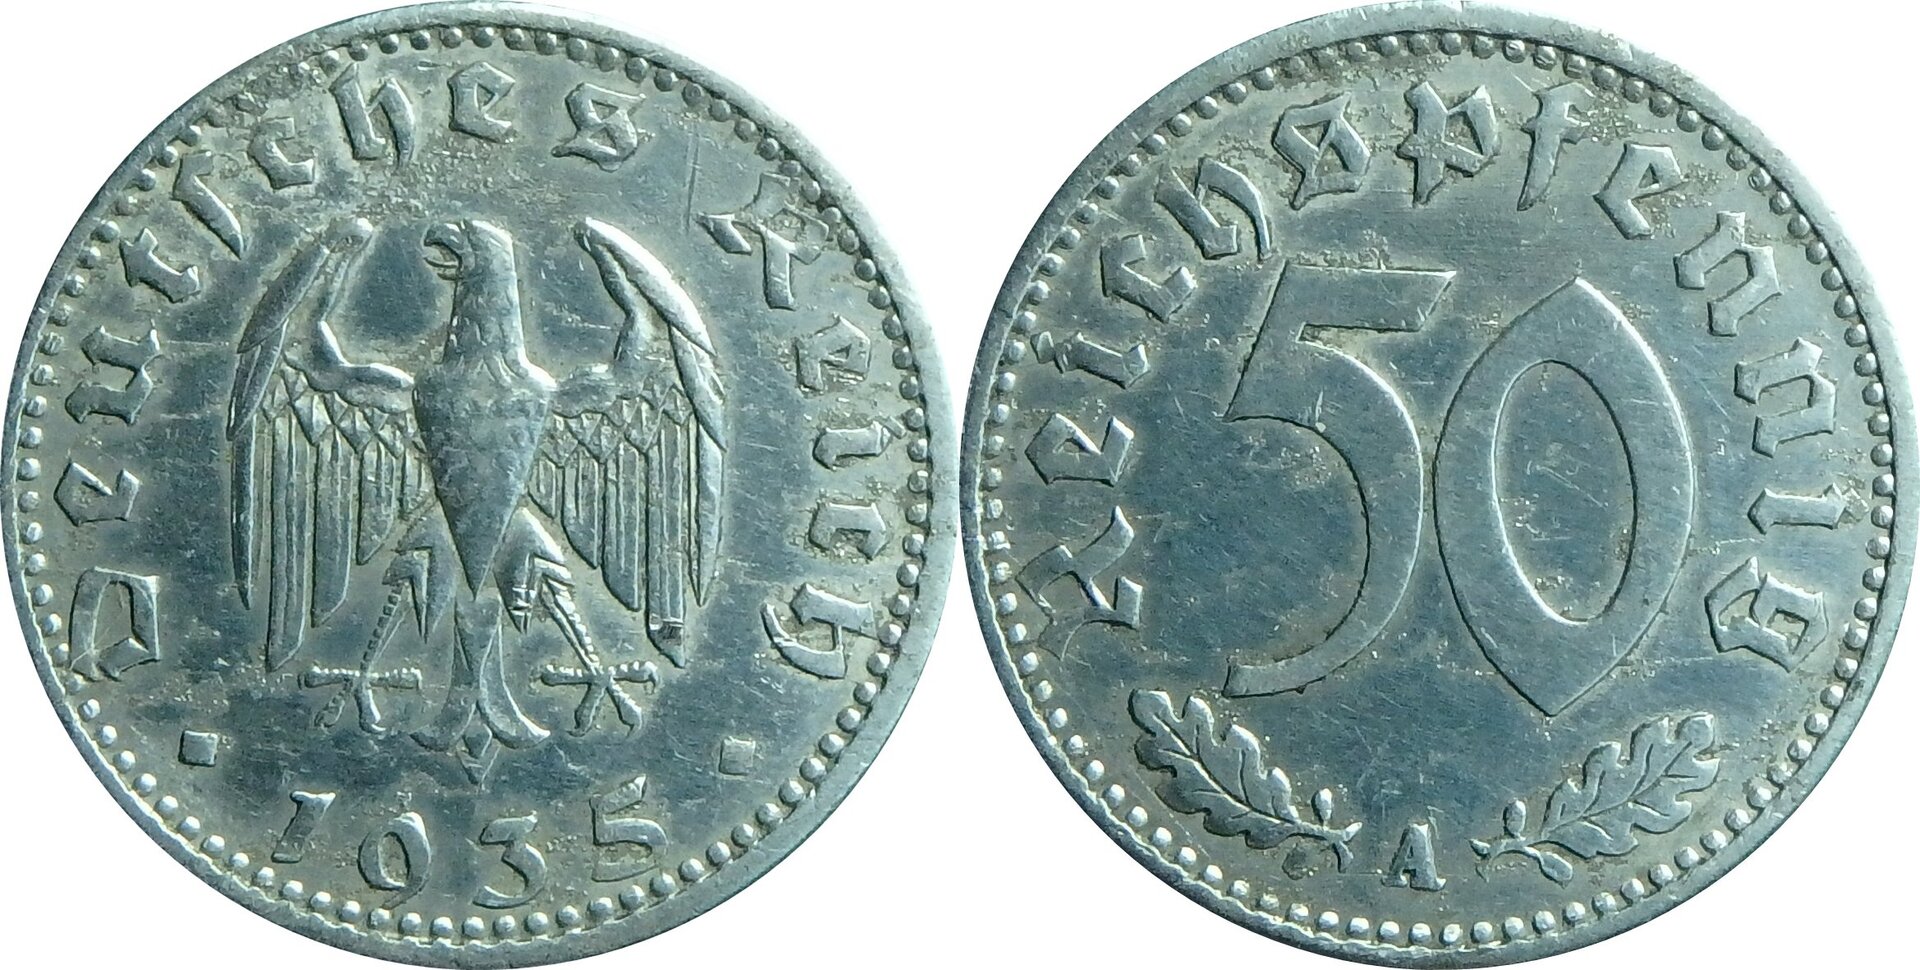 1935 A DE 50 p.jpg